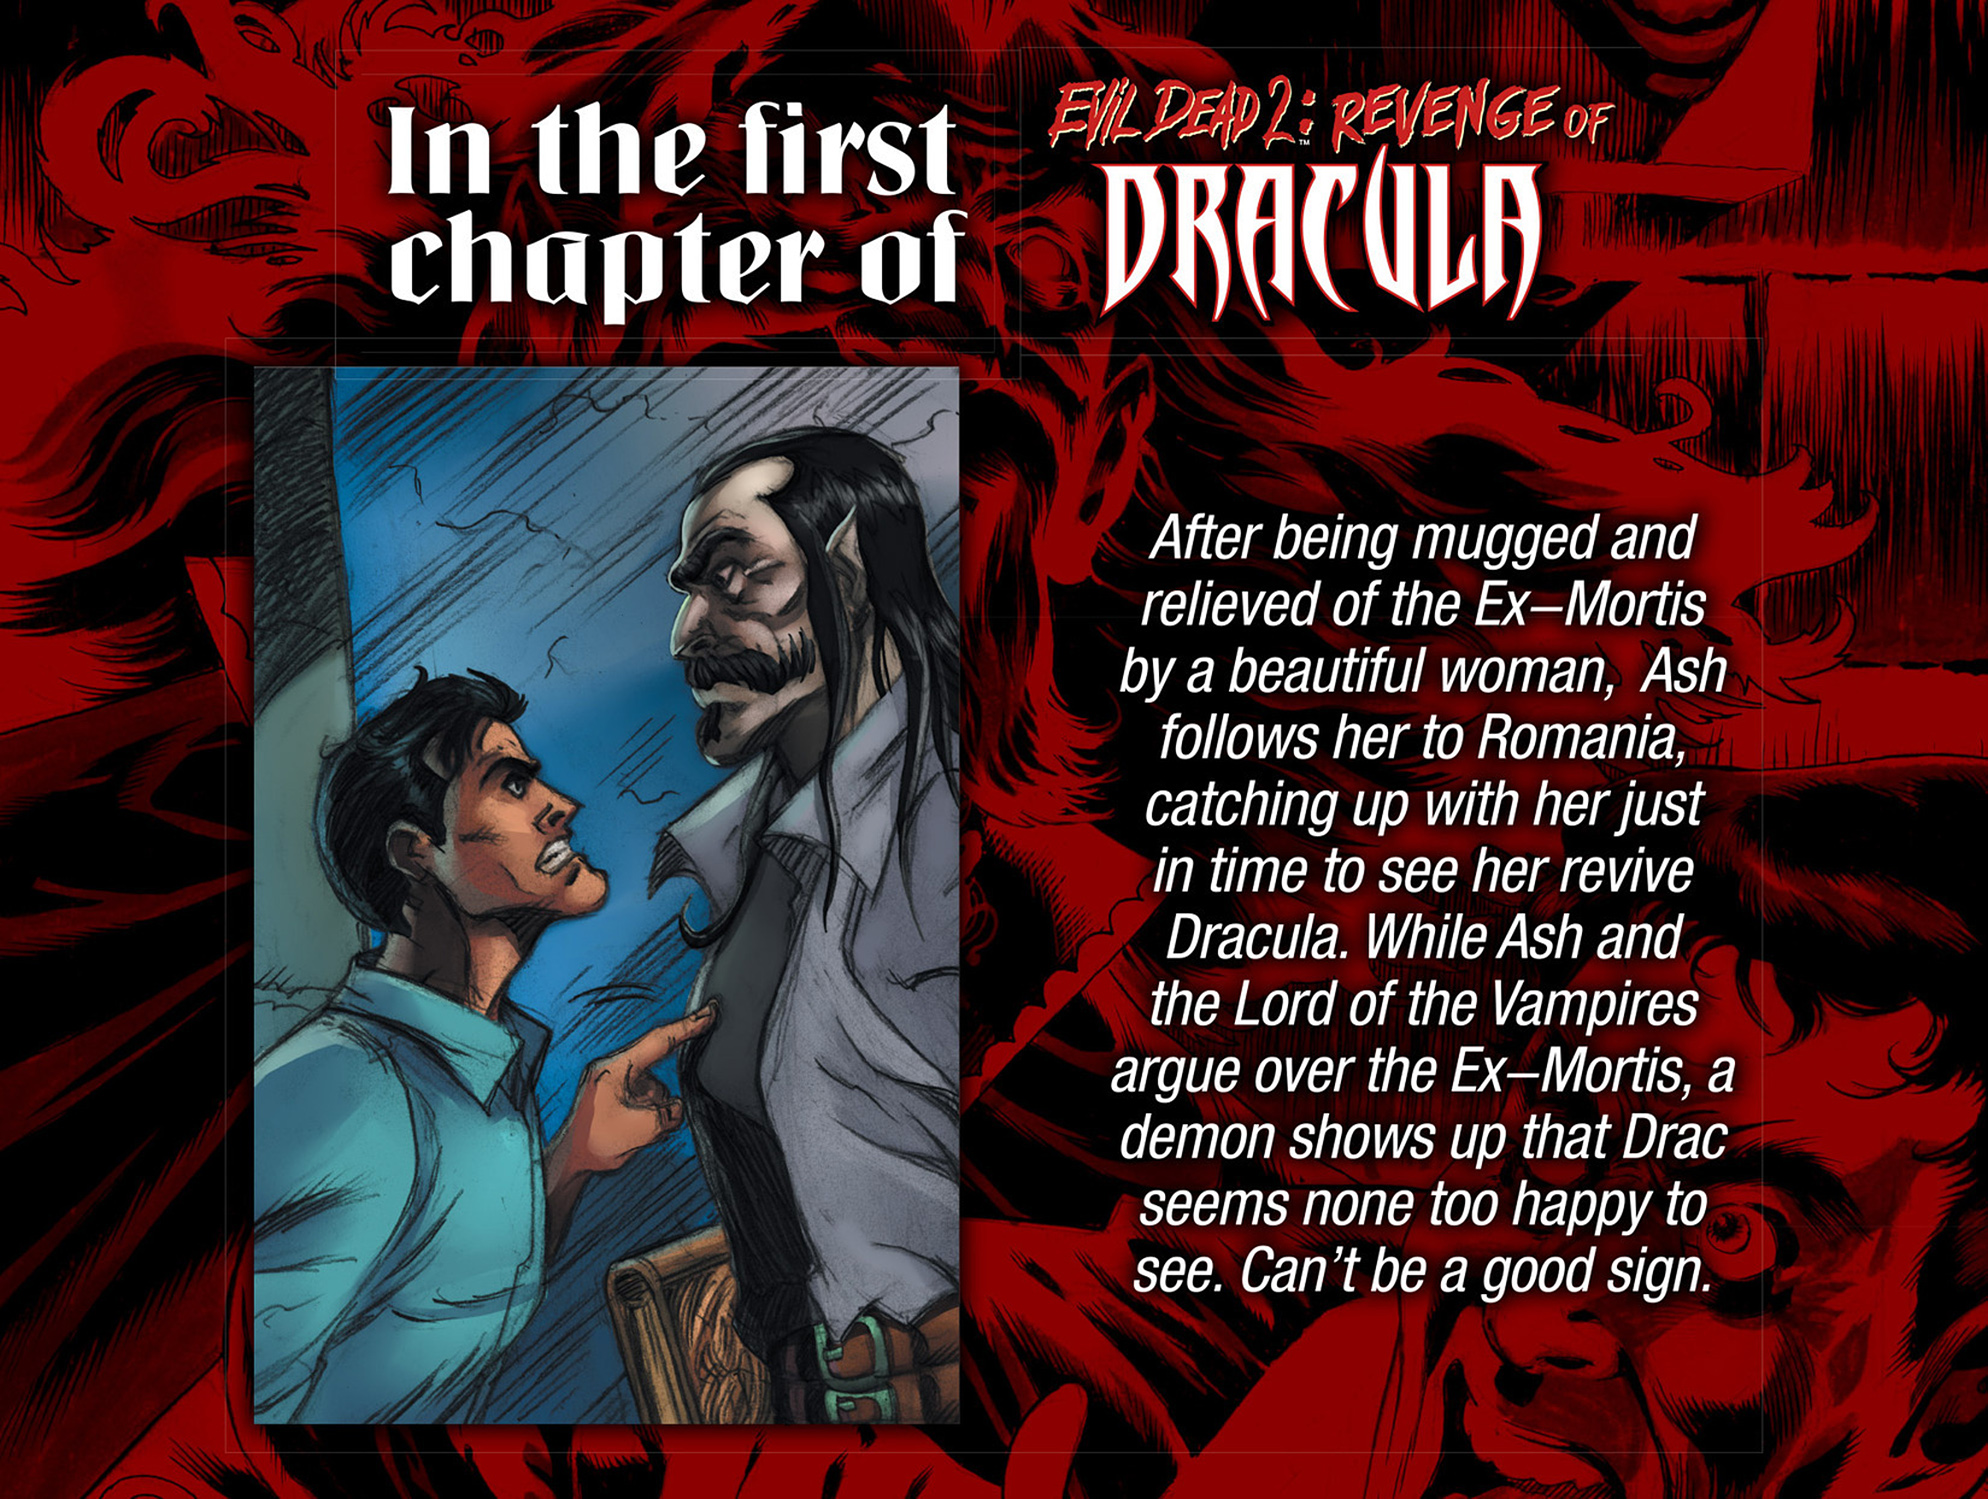 Read online Evil Dead 2: Revenge of Dracula comic -  Issue #2 - 3